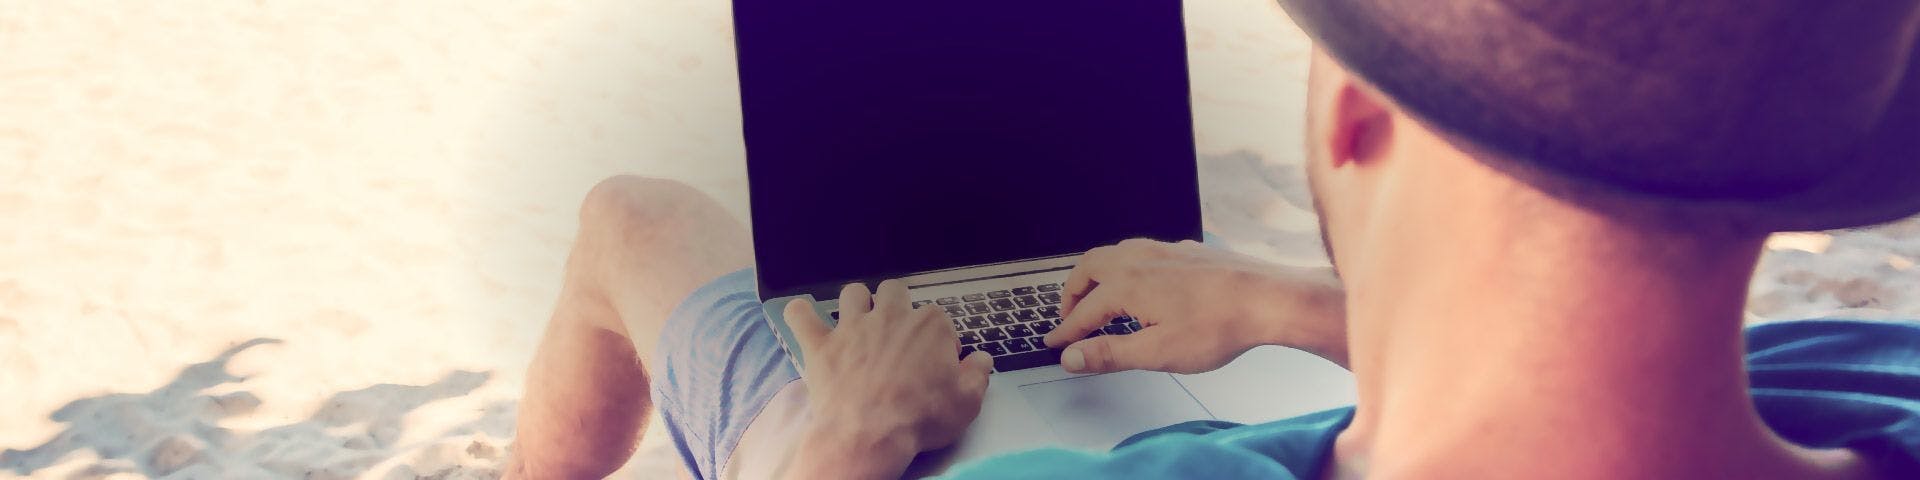 Homem na praia com computador portátil